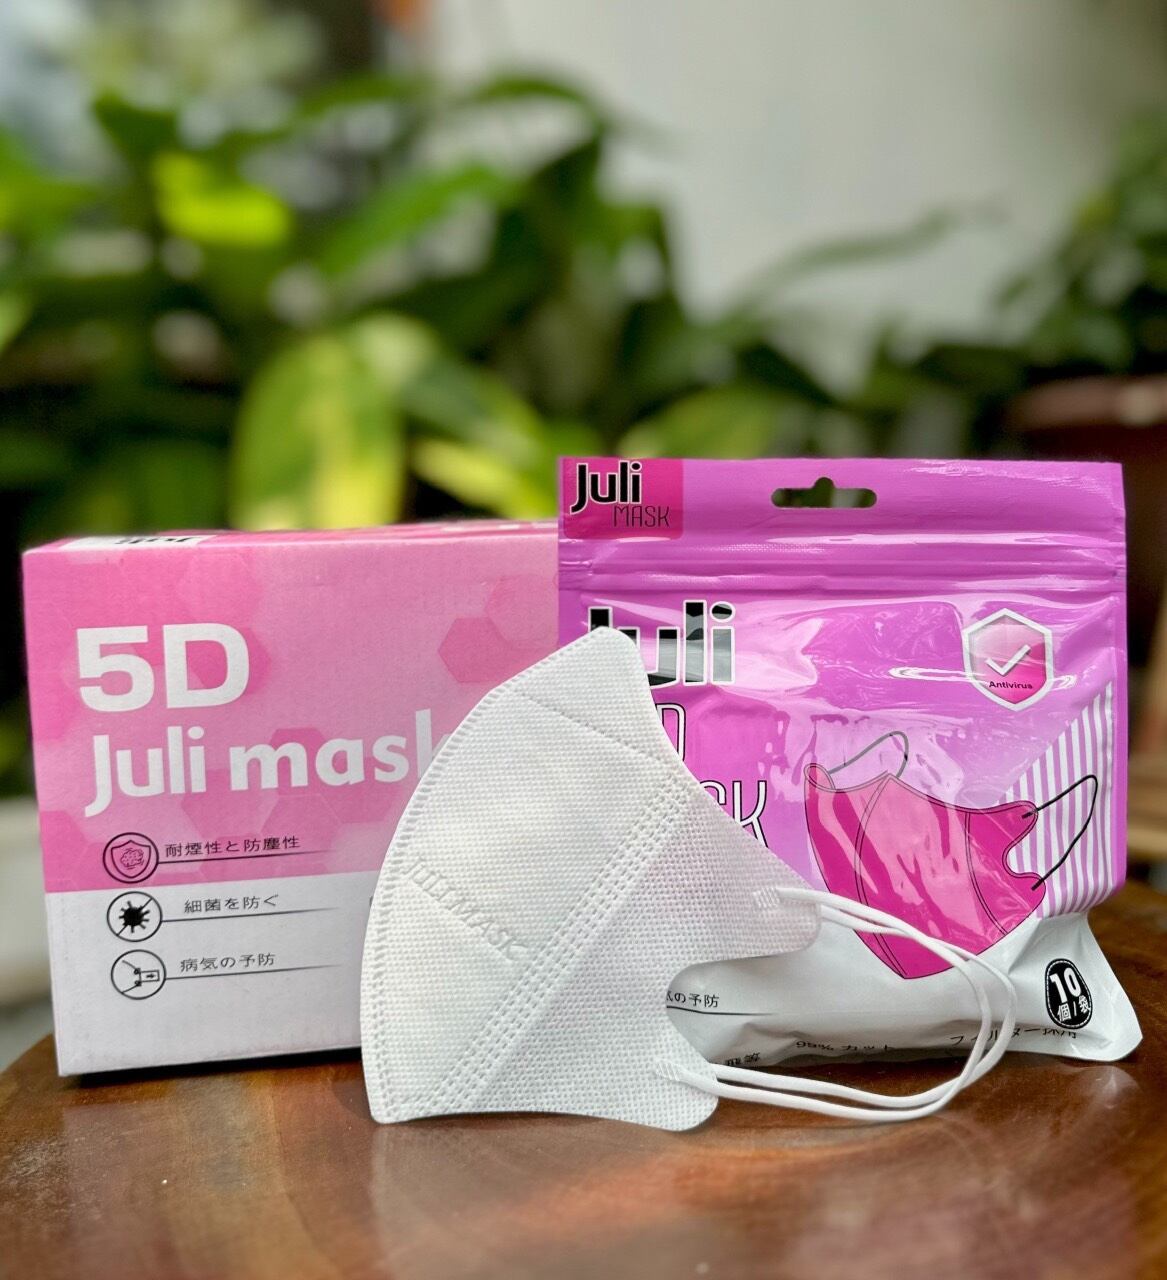 Sỉ thùng 200 chiếc Khẩu Trang 5D JULI Mask hàng cao cấp nhiều màu đẹp